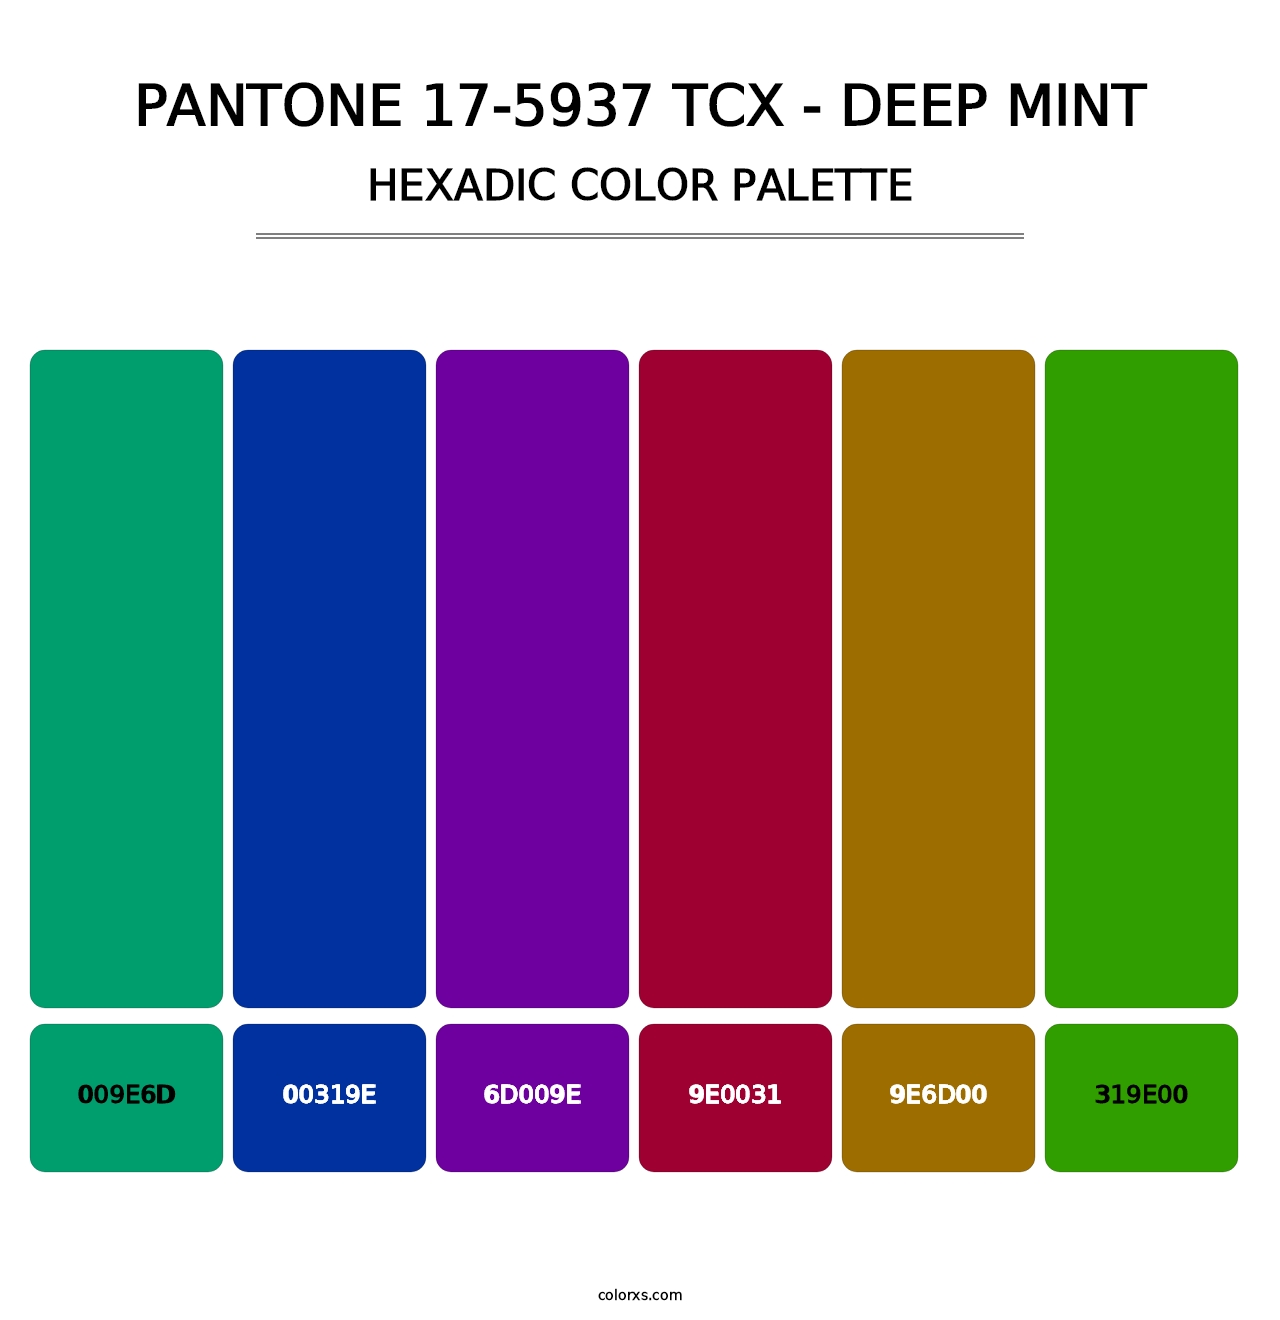 PANTONE 17-5937 TCX - Deep Mint - Hexadic Color Palette